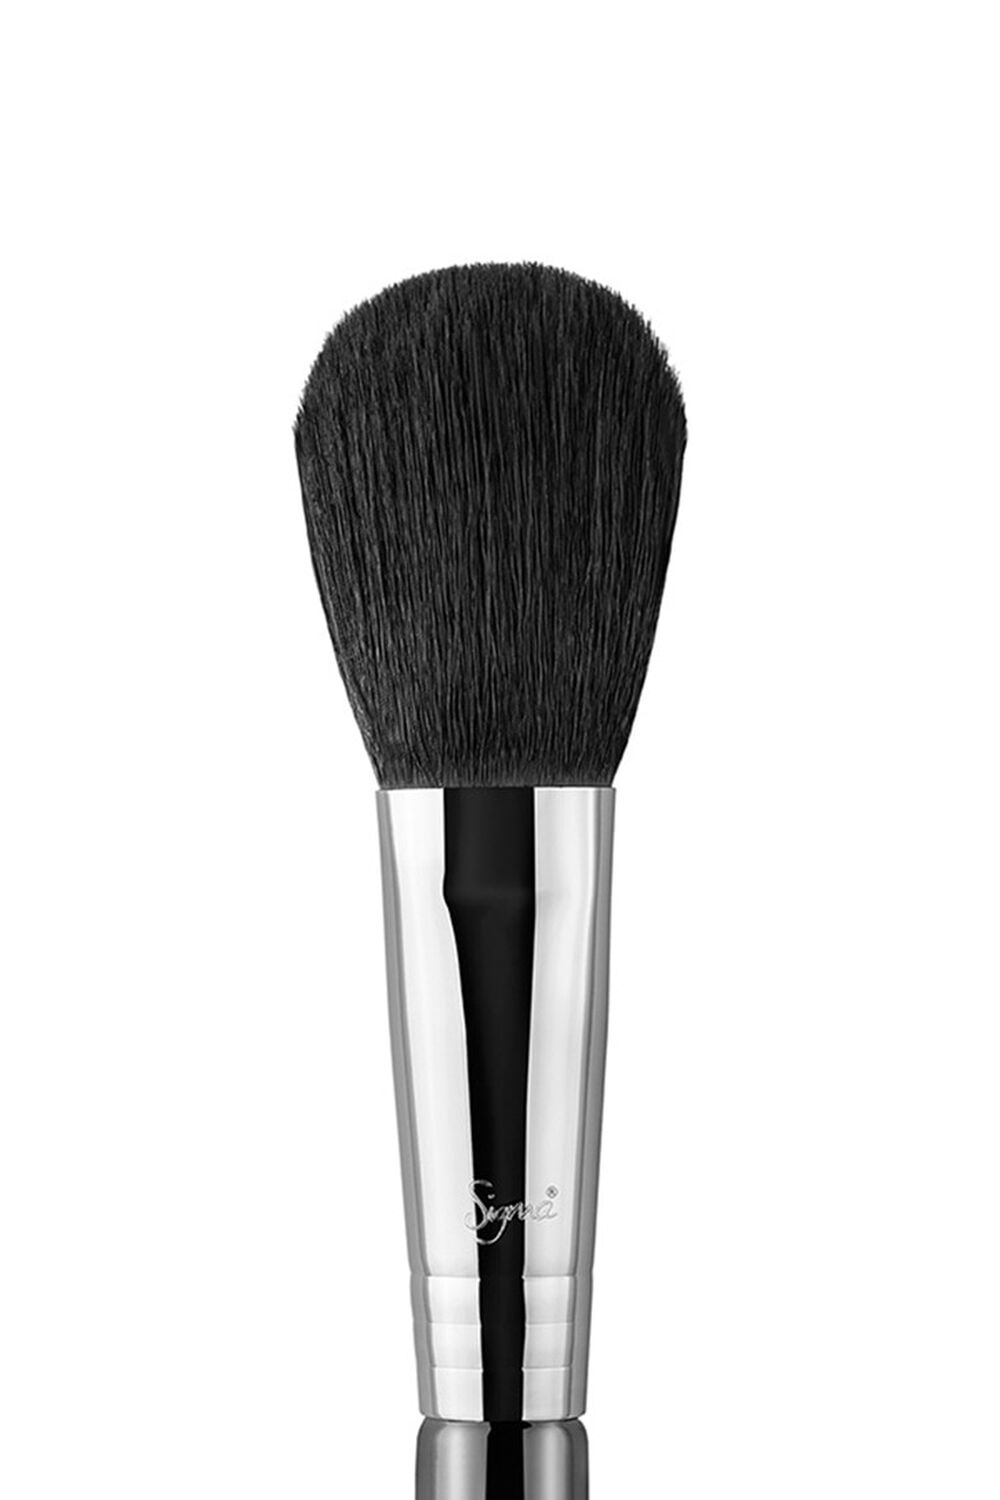 Sigma Beauty F10 – Powder Blush Brush, image 2